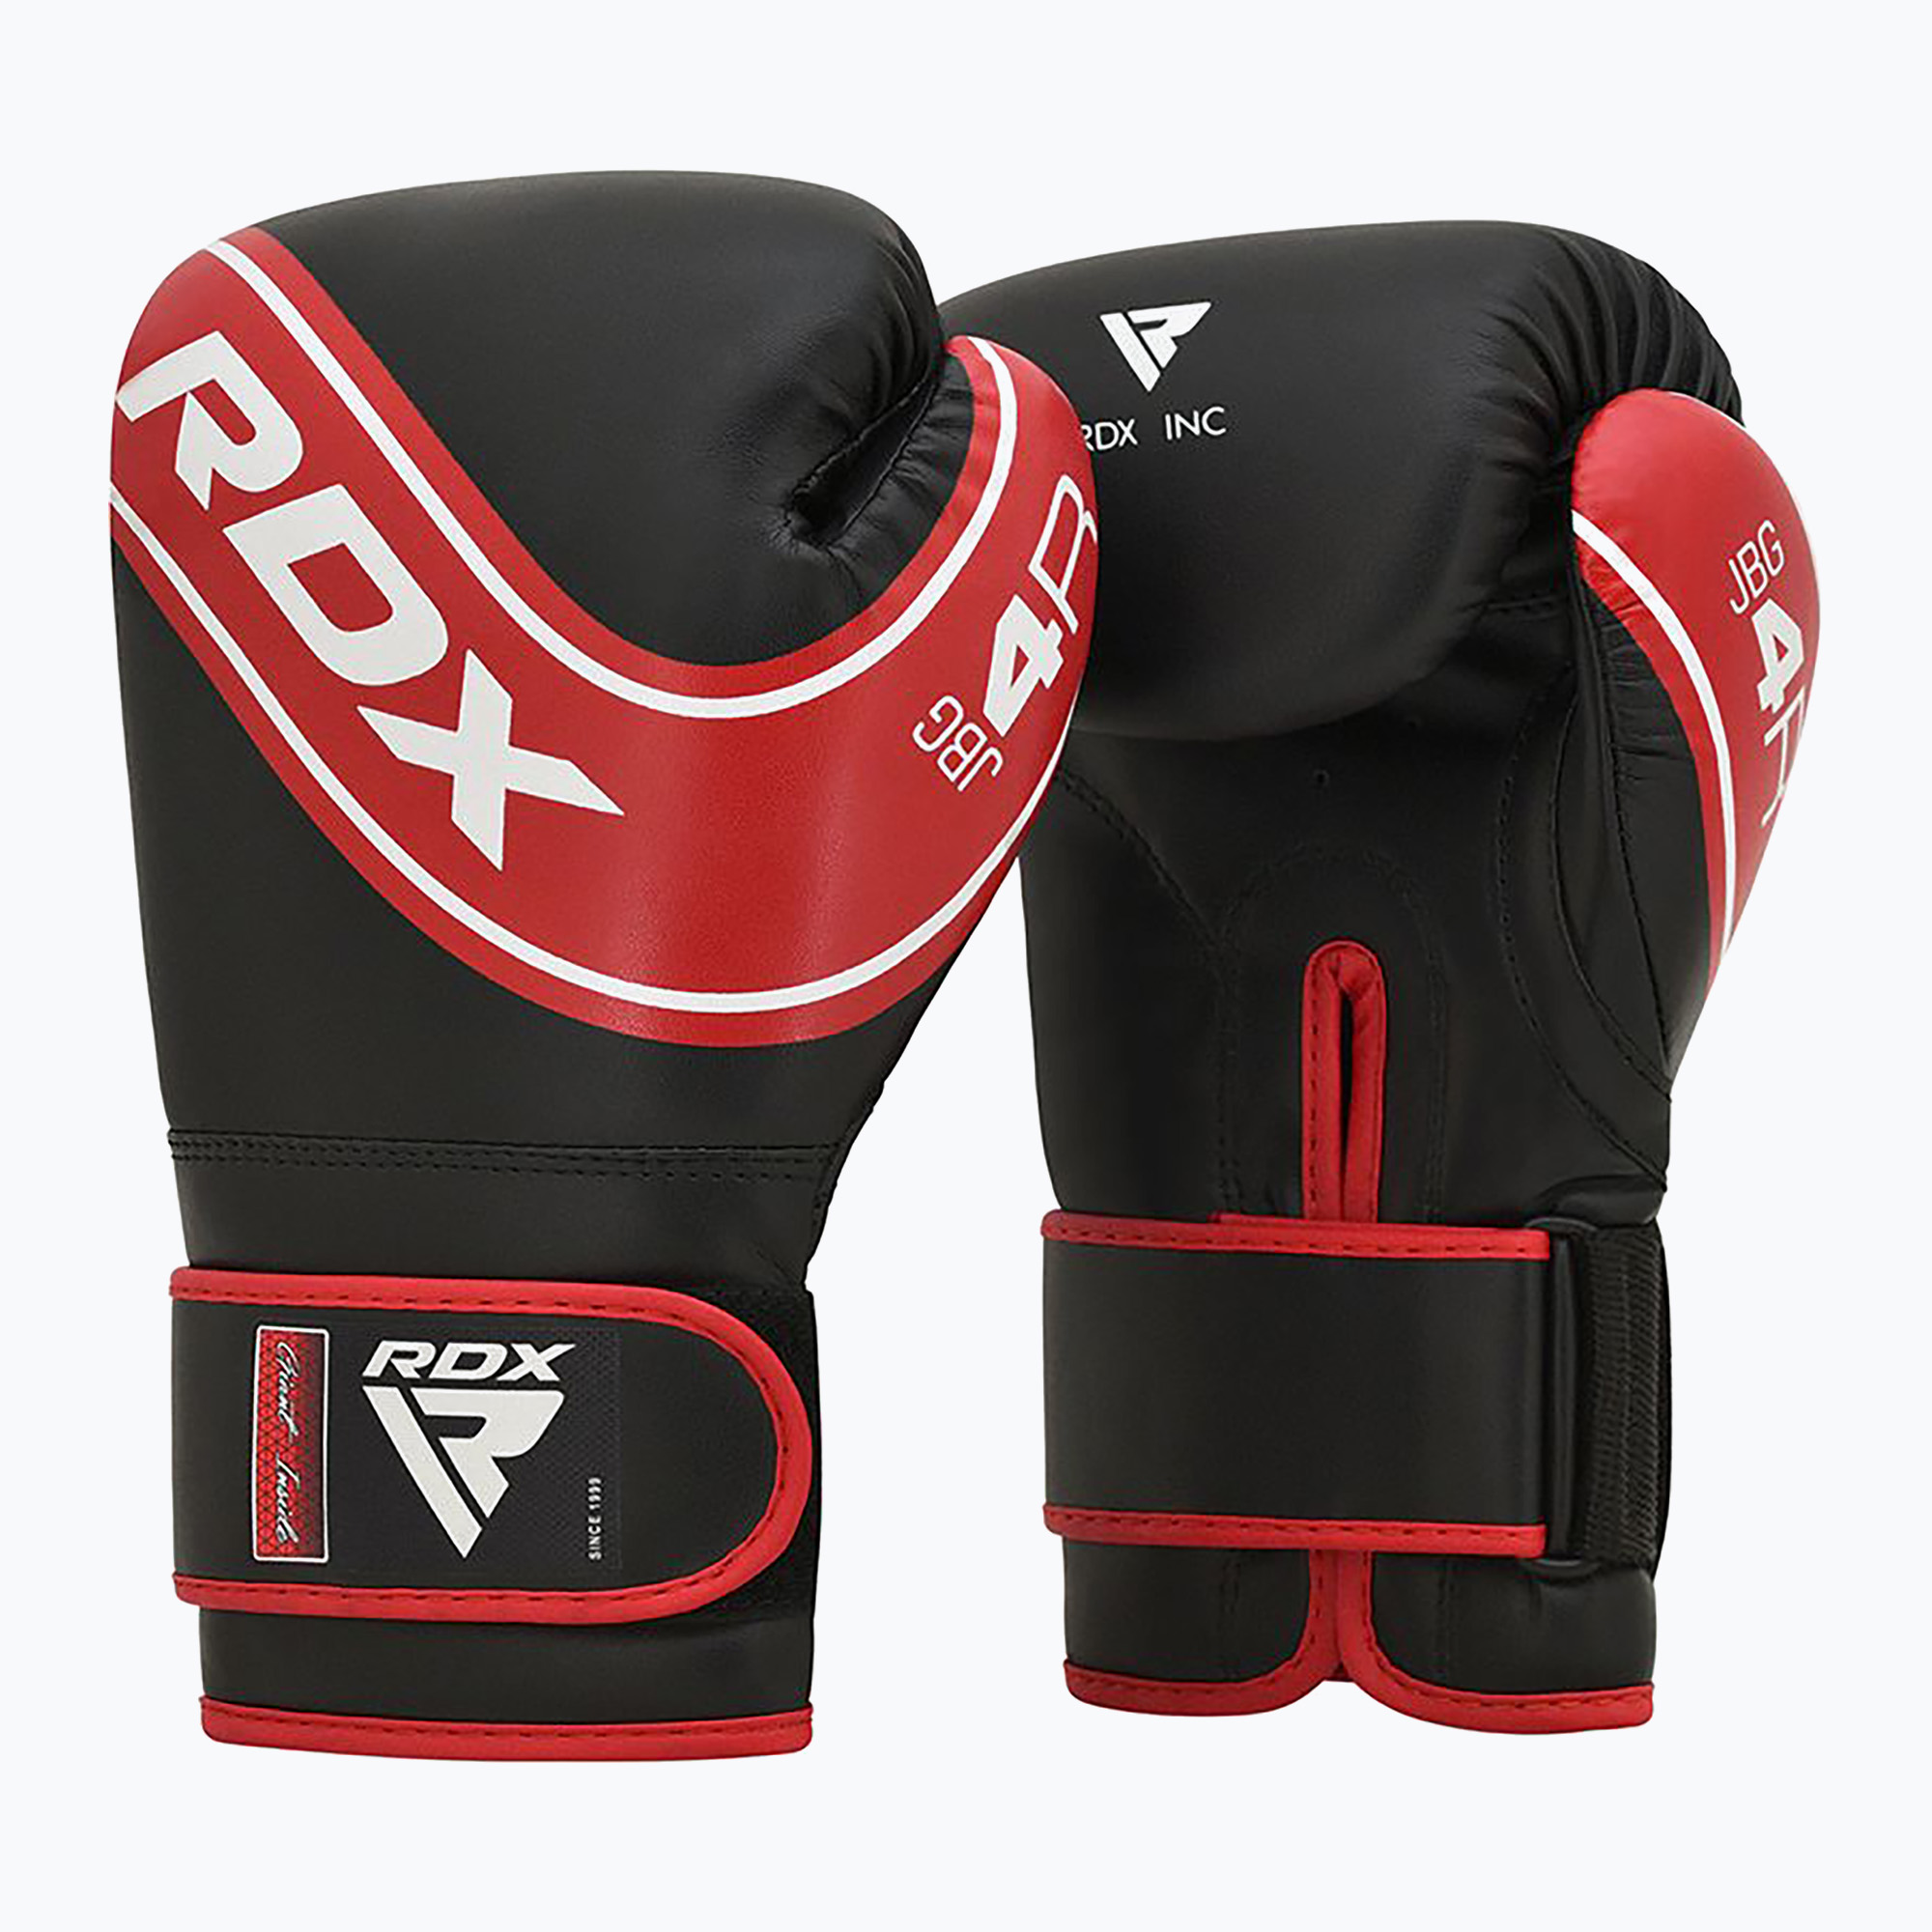 Mănuși de box pentru copii RDX JBG-4 roșu/negru pentru copii